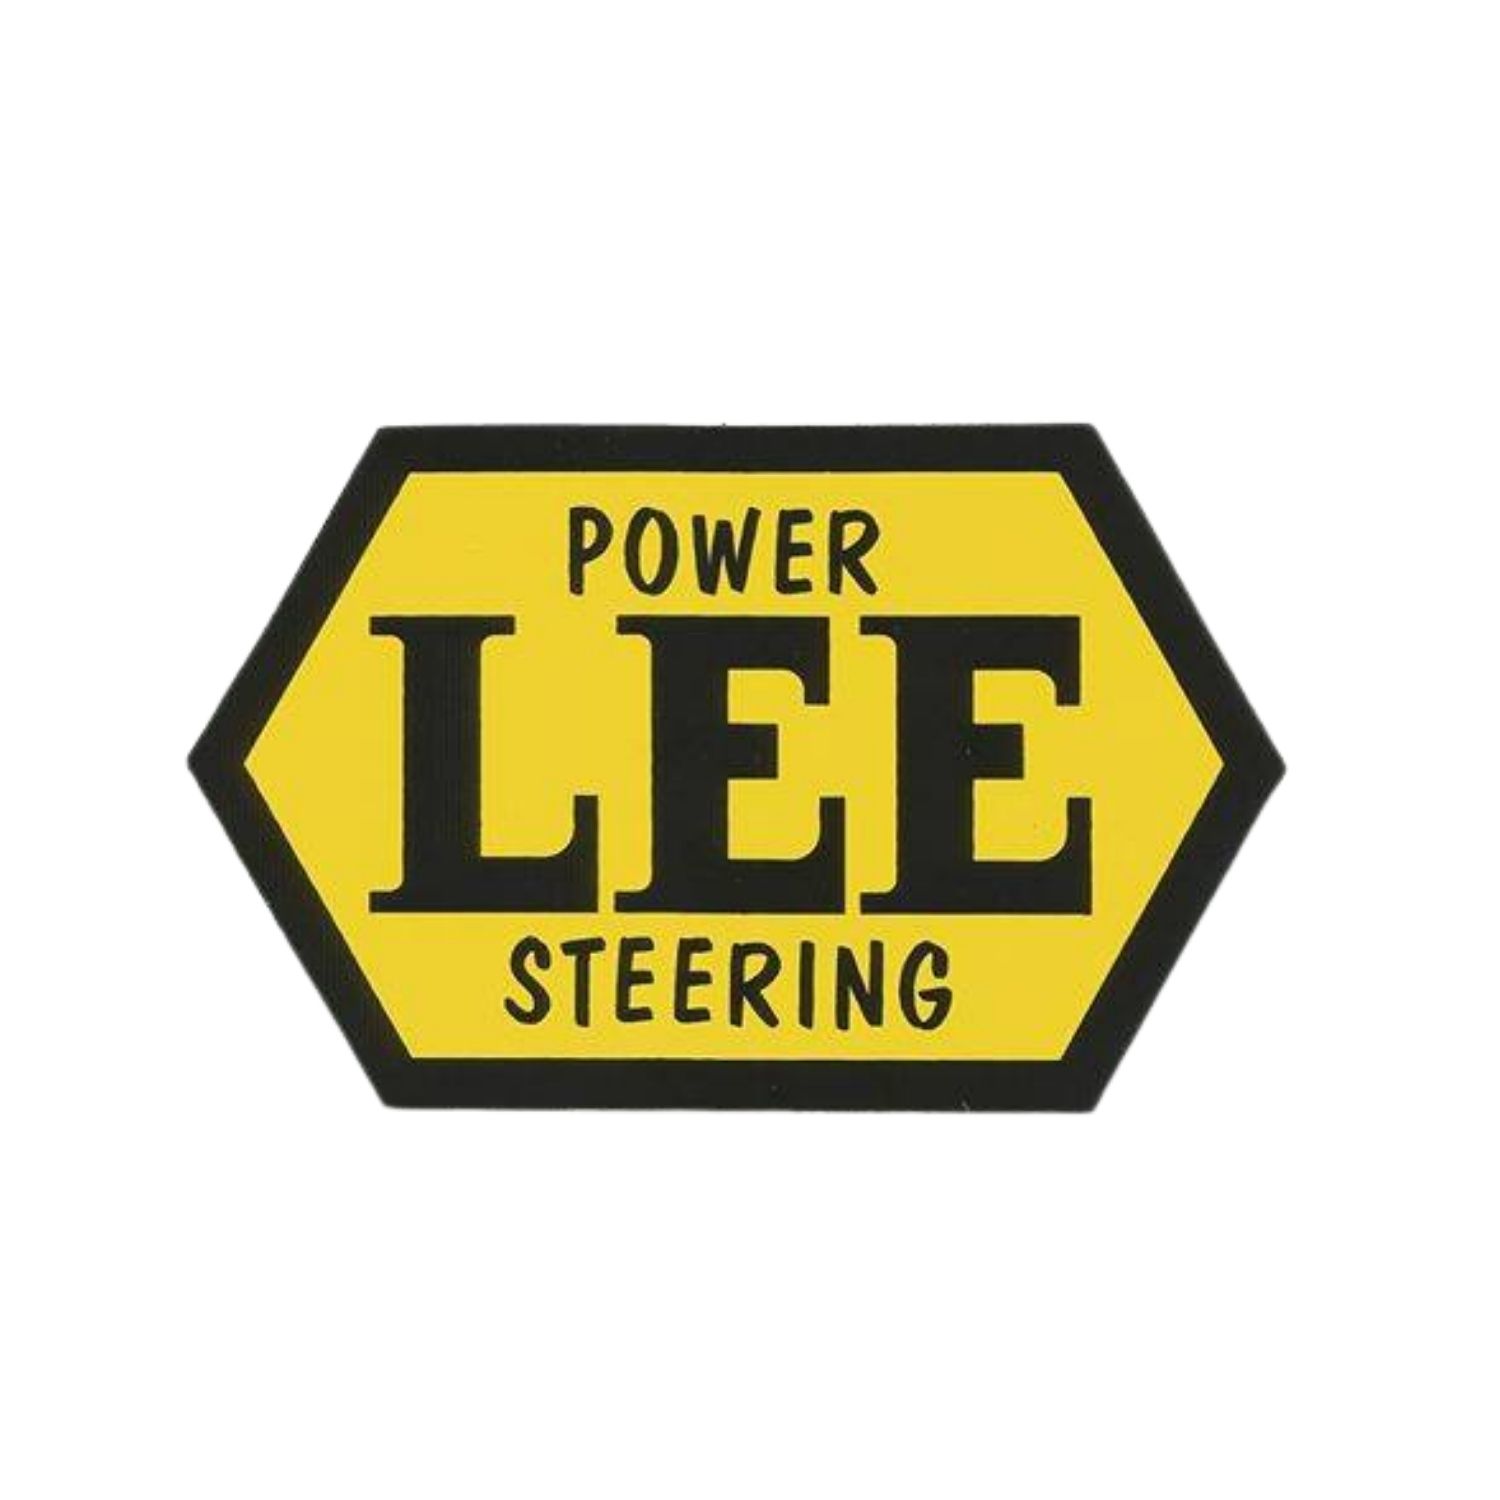 Lee Power Steering